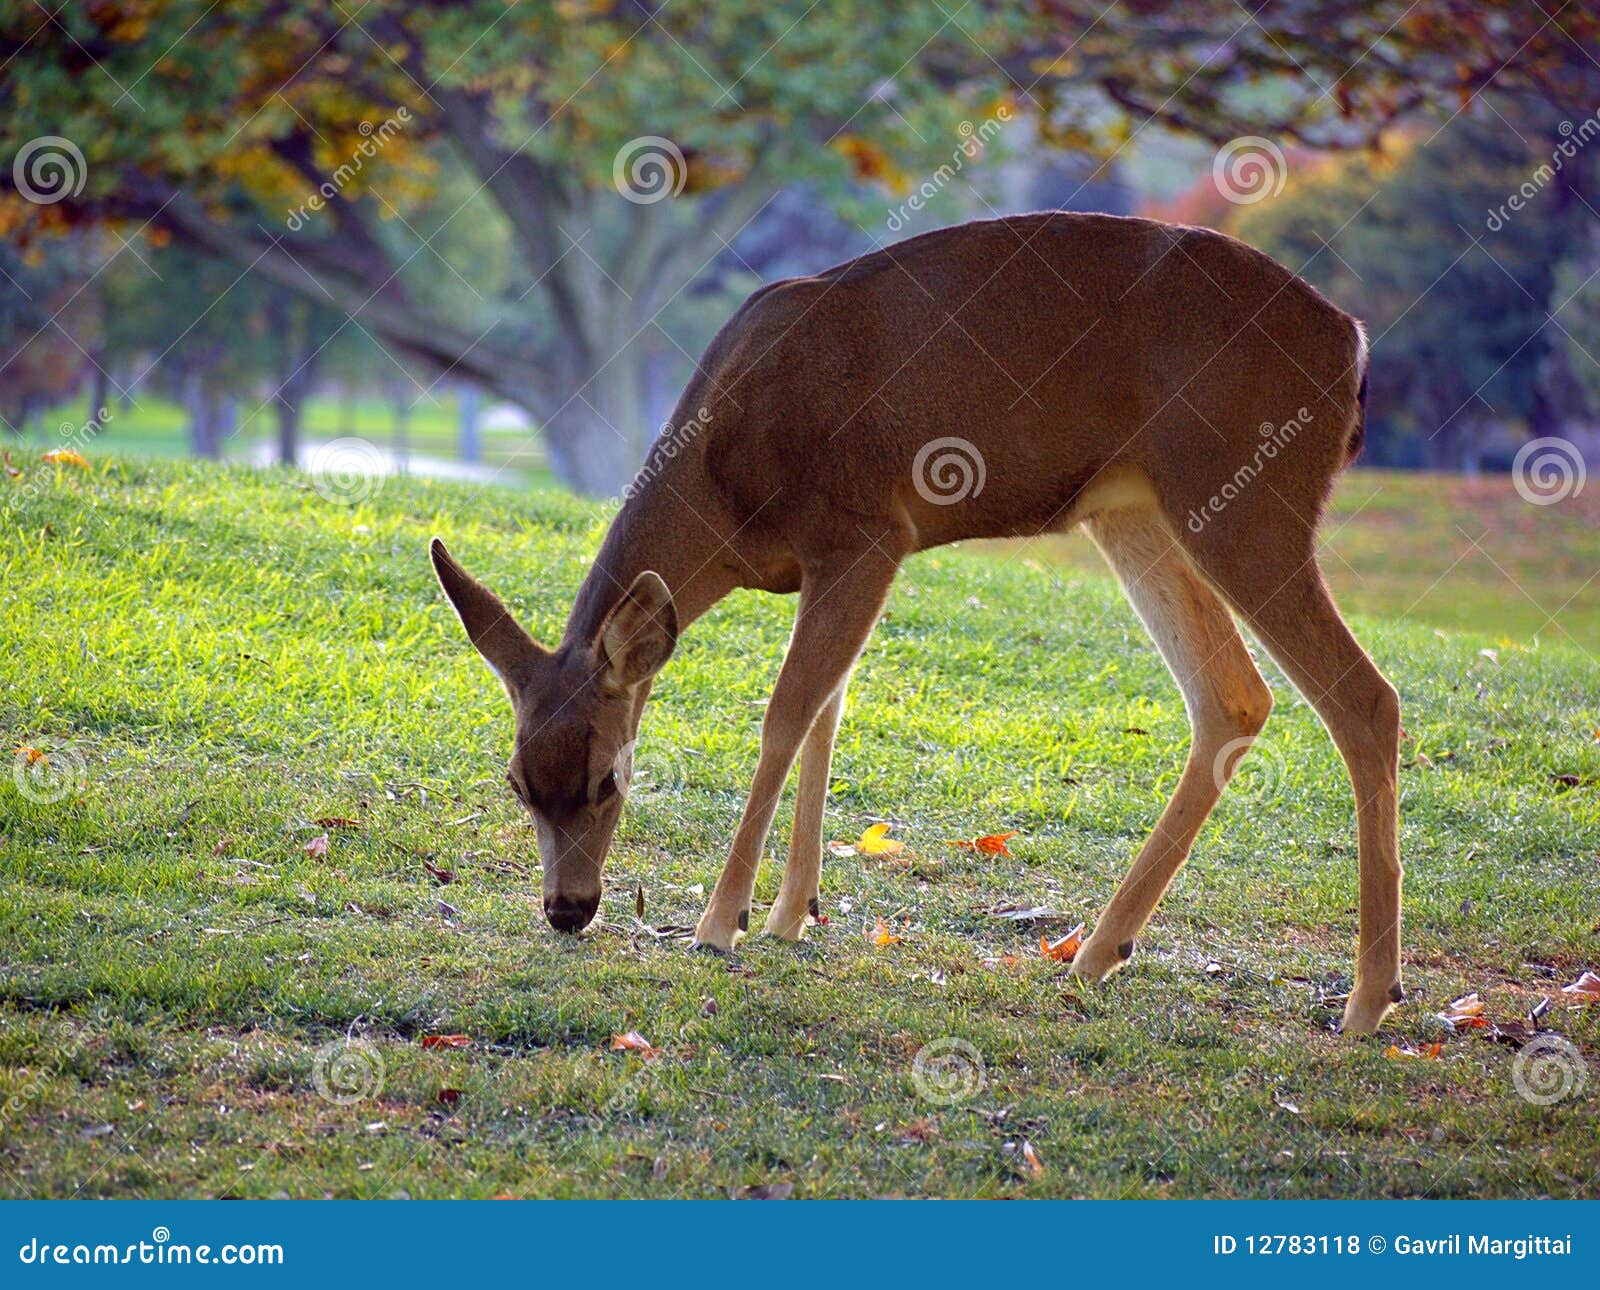 whitetail deer grazing